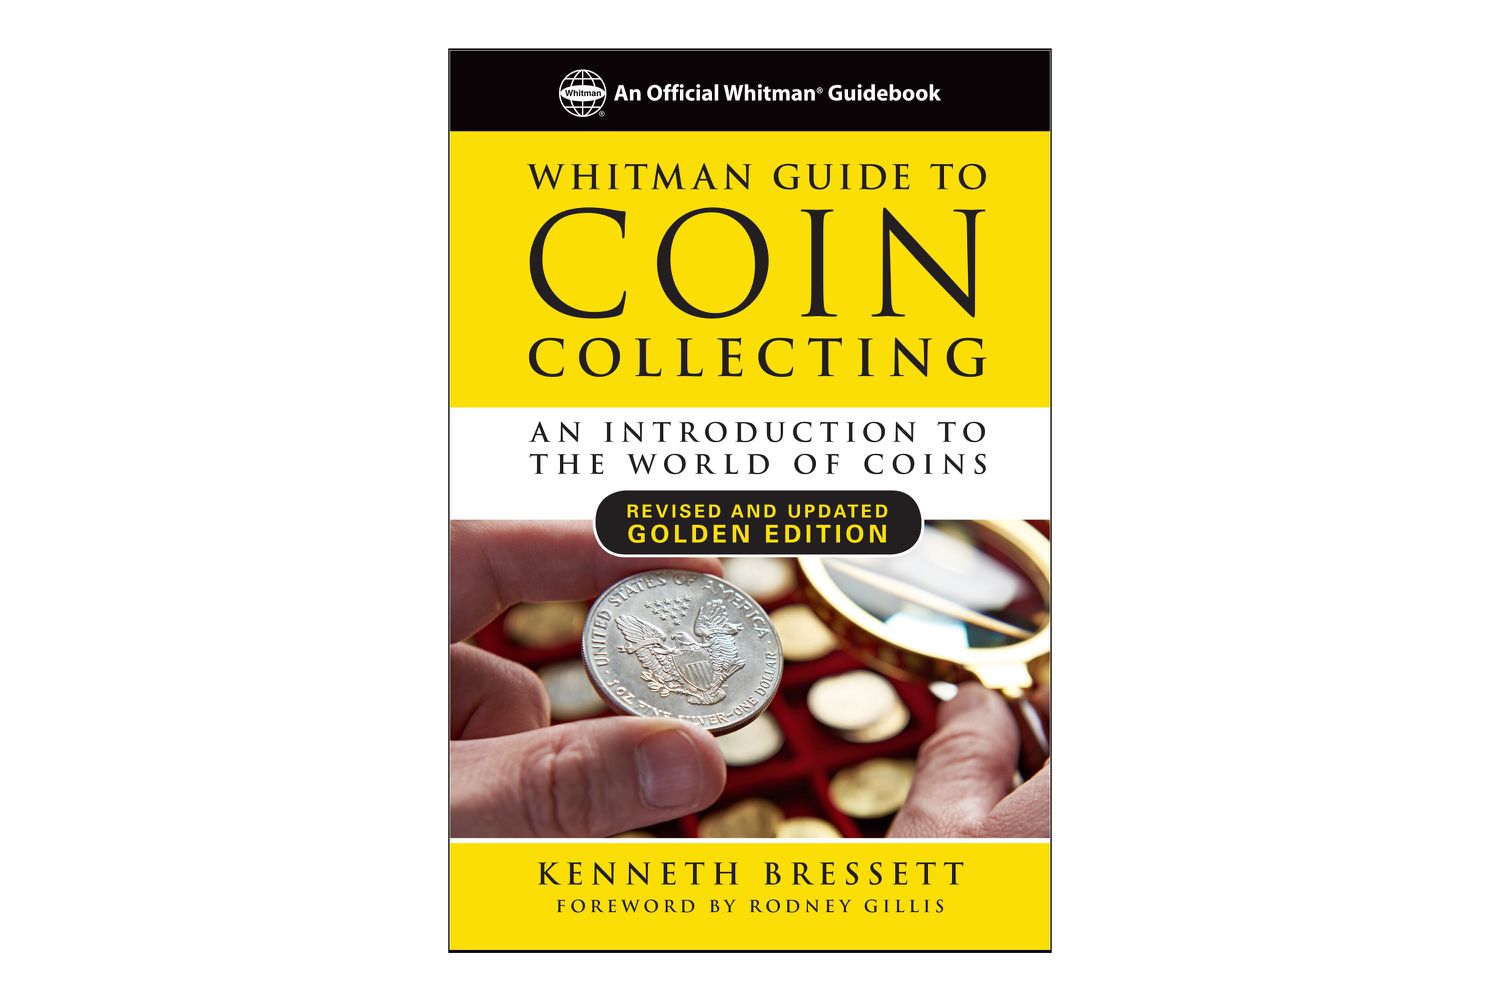 惠特曼硬币收集指南,介绍世界硬币,肯尼斯·Bressett”></noscript>
            </div>
           </div>
           <figcaption id=